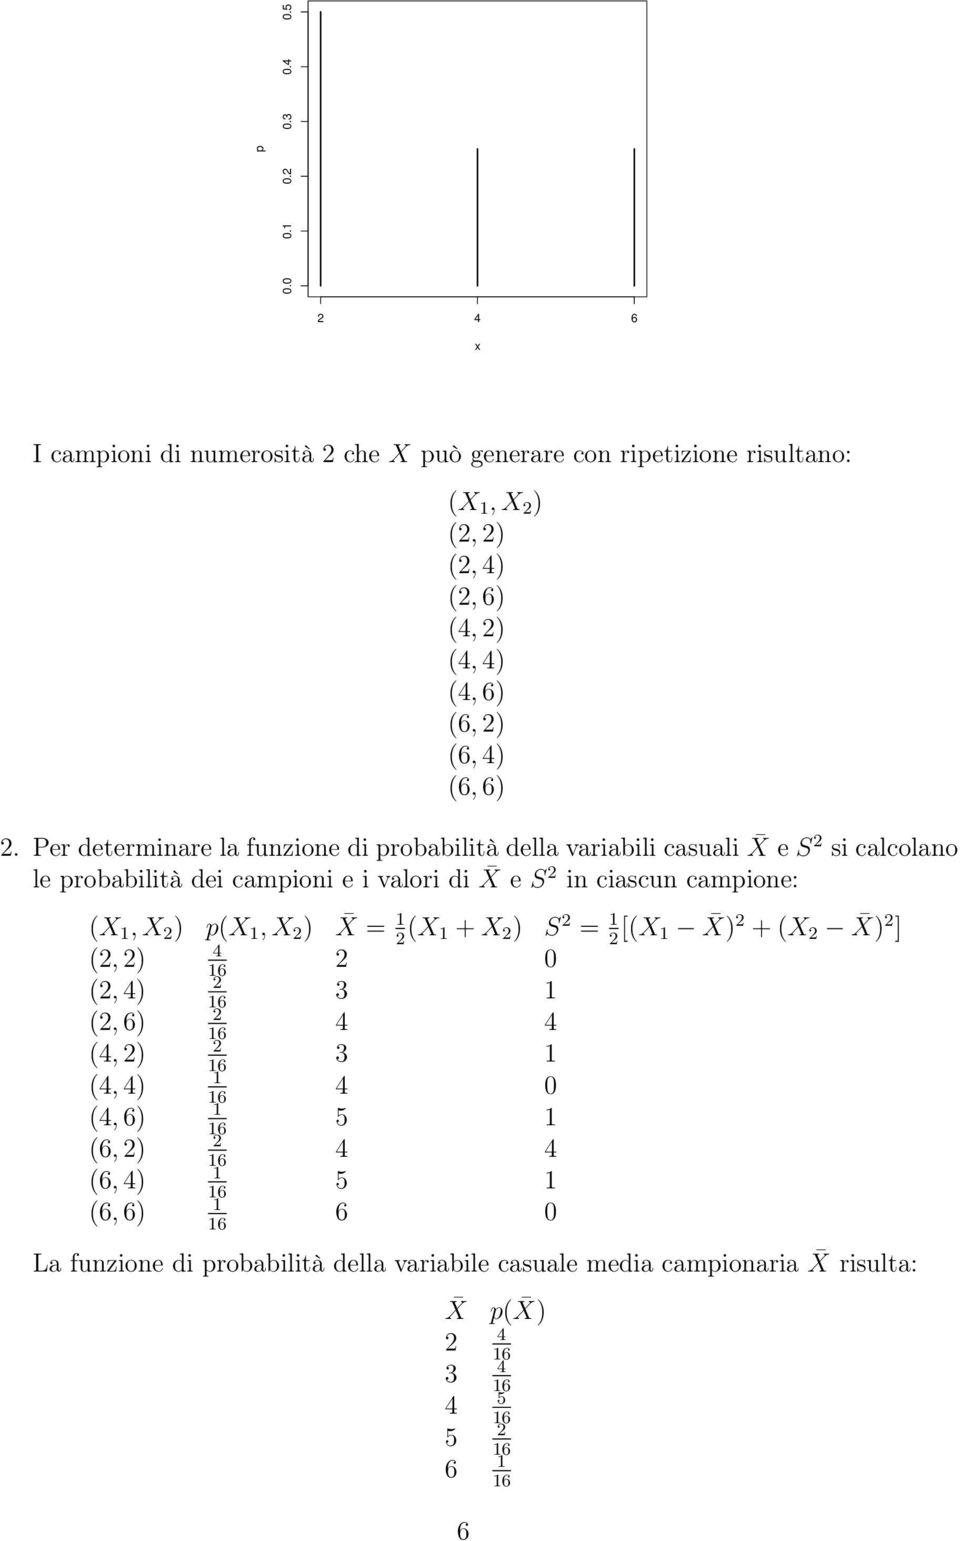 Per determinare la funzione di probabilità della variabili casuali X e S si calcolano le probabilità dei campioni e i valori